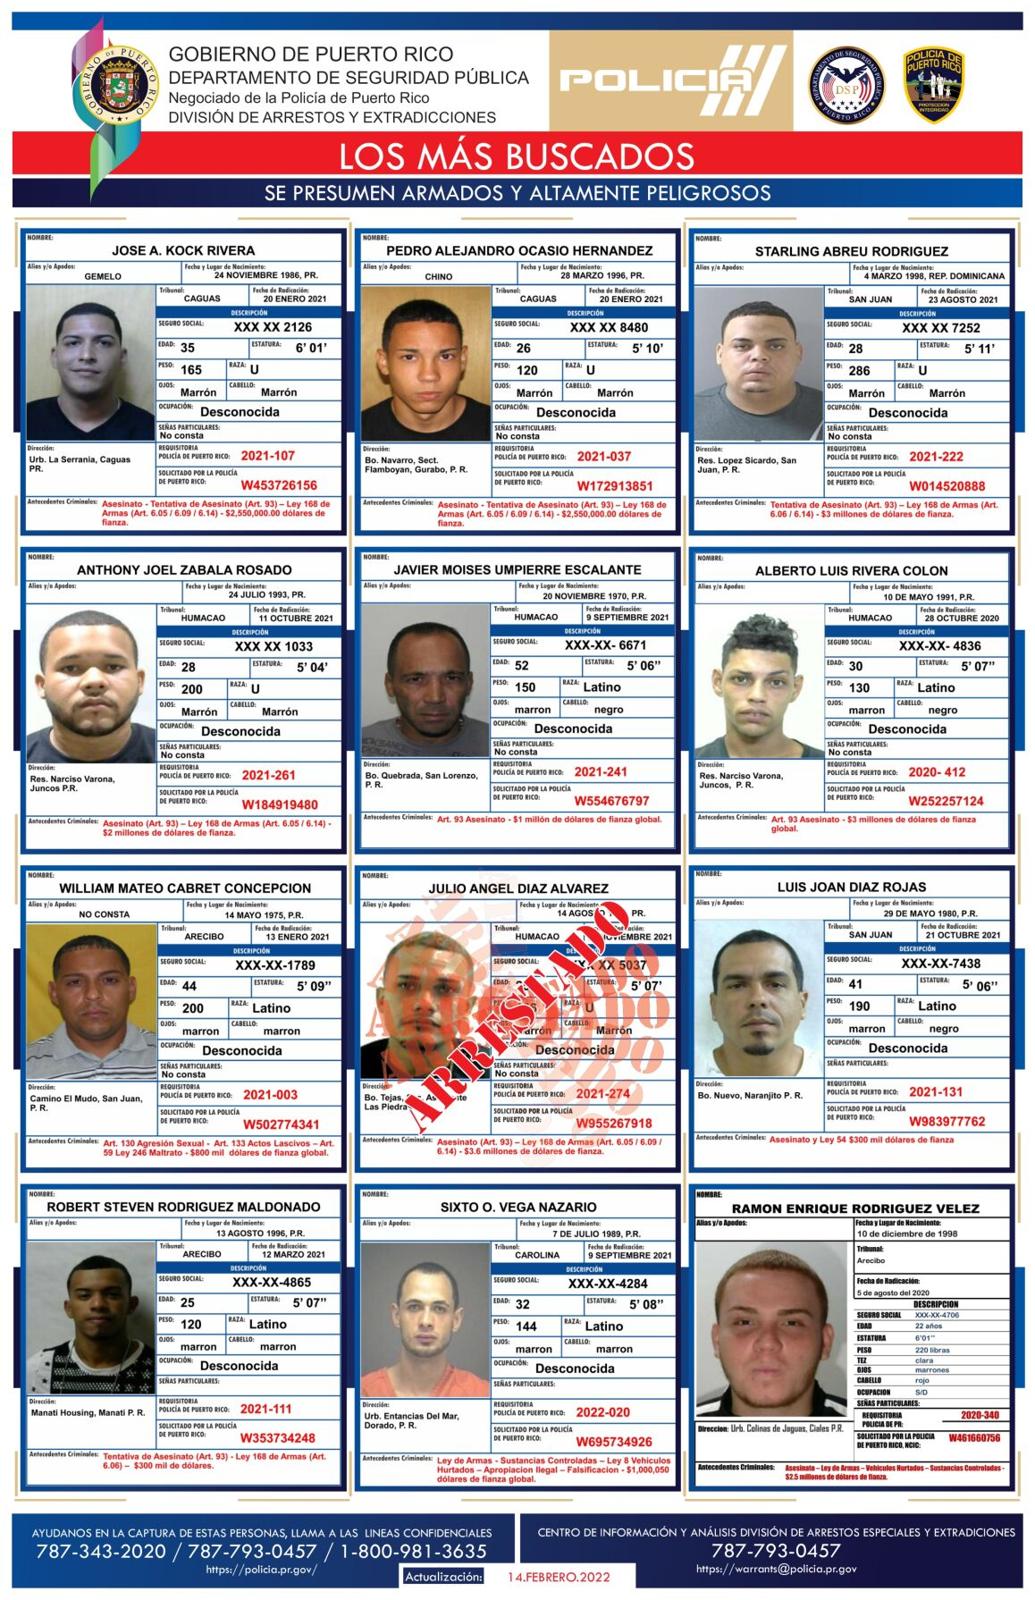 Extensa la lista de los más buscados en Puerto Rico Policiacas